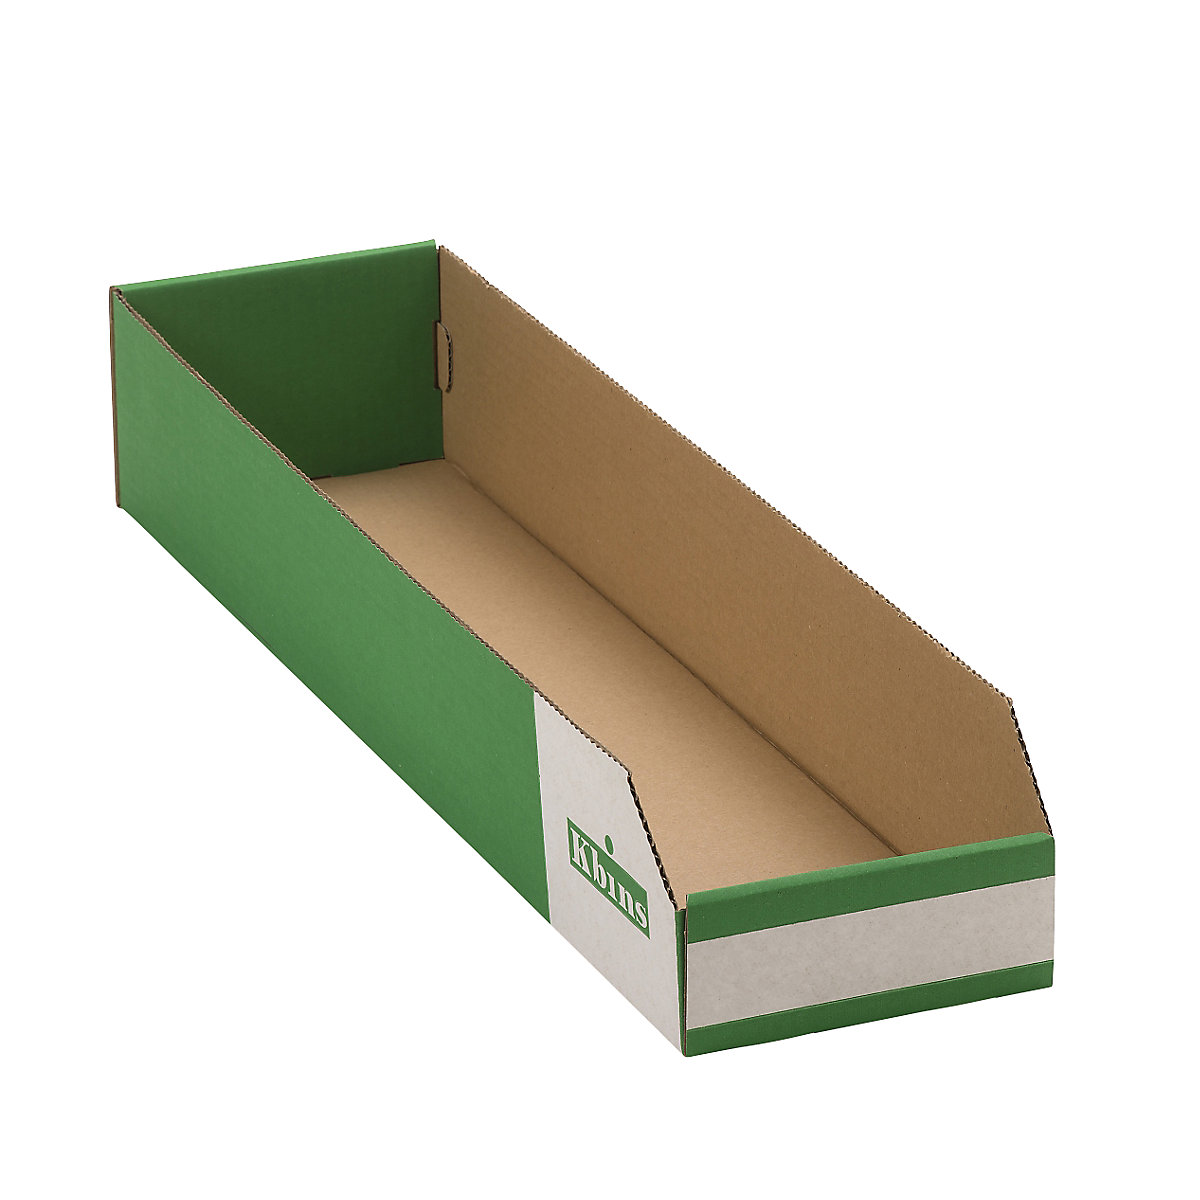 Karton állványdoboz, egyrétegű és összehajtható kivitel, cs. e. 50 db, h x szé x ma 600x150x100 mm-2